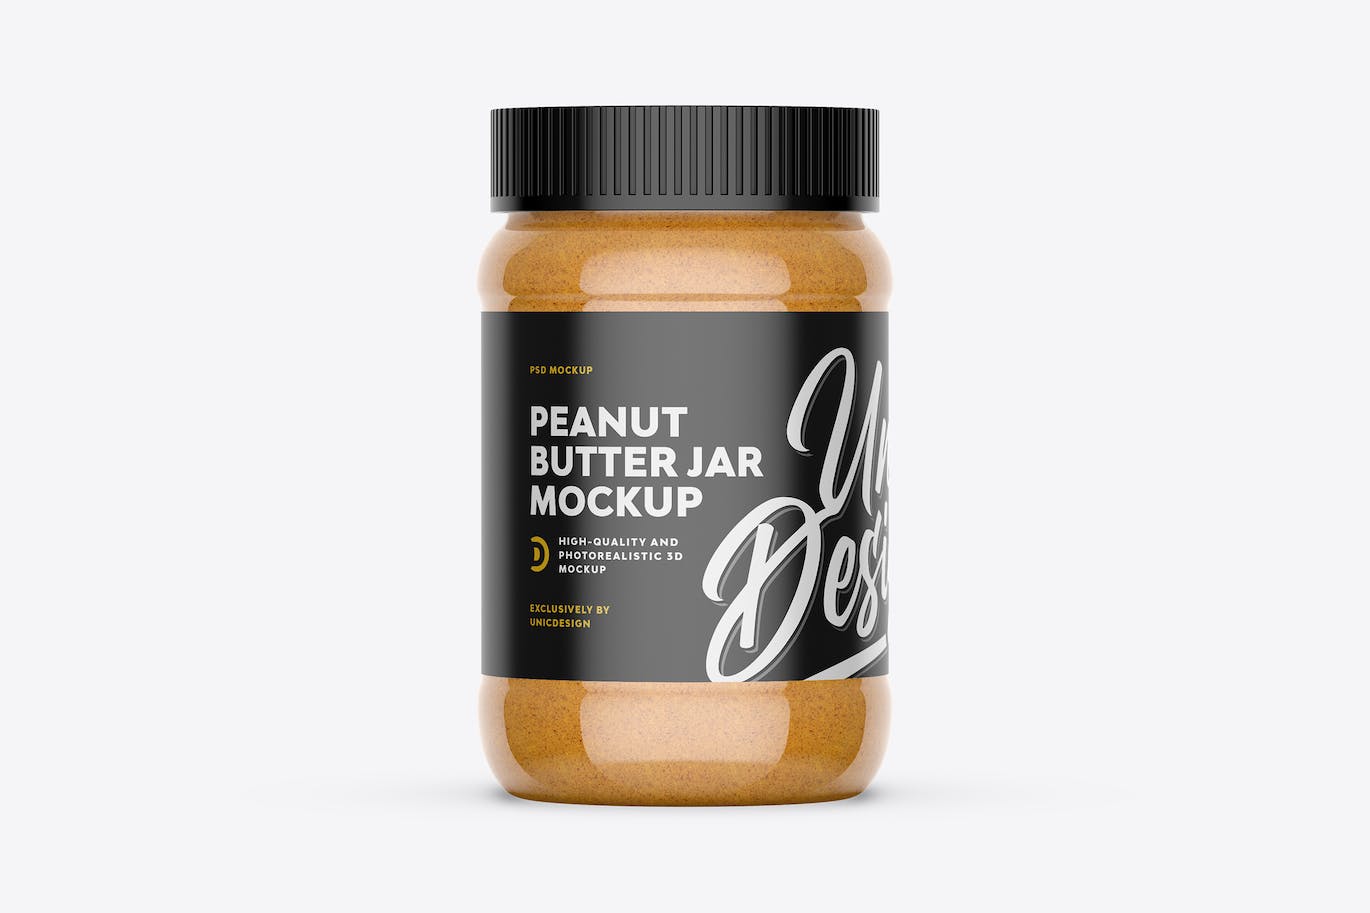 花生酱罐商标包装设计样机 Peanut Butter Jar Mockup 样机素材 第1张